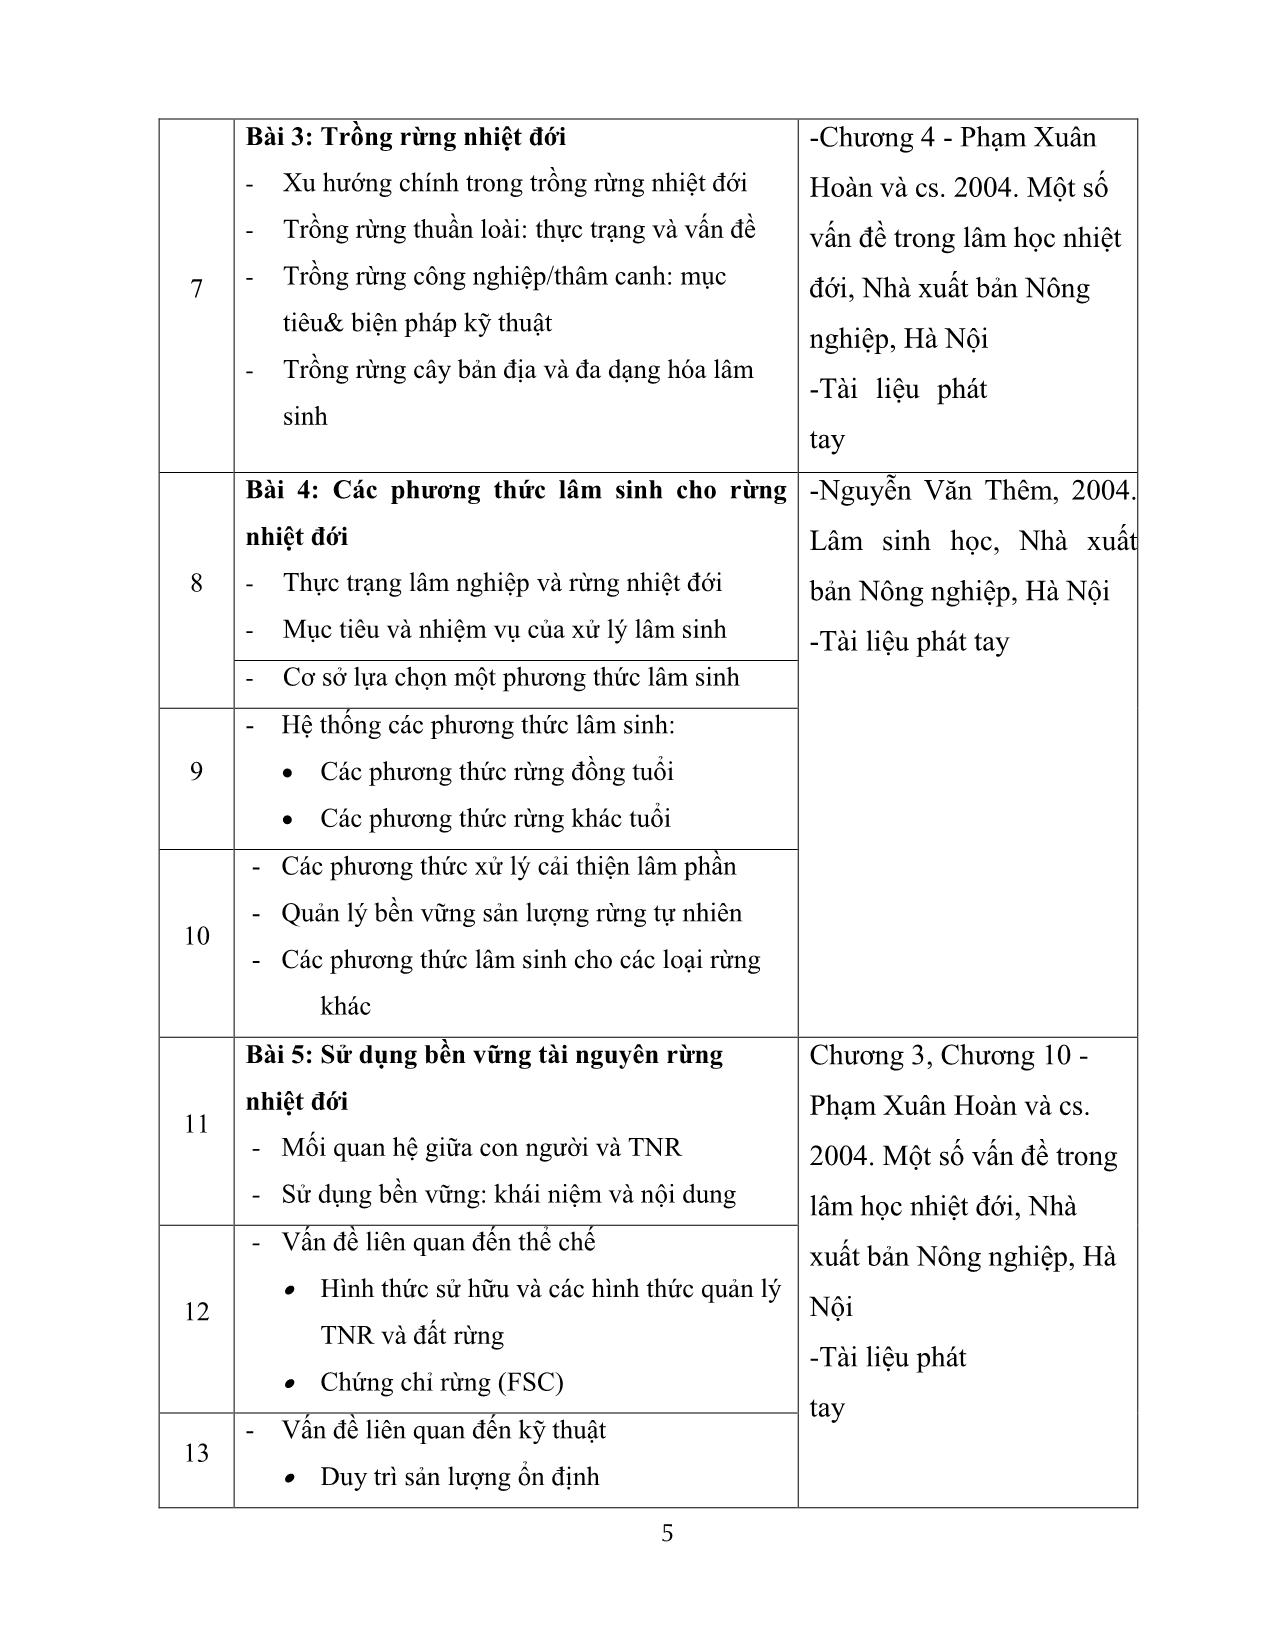 Đề cương chi tiết học phần Kỹ thuật lâm sinh nhiệt đới - Dương Văn Thảo trang 5